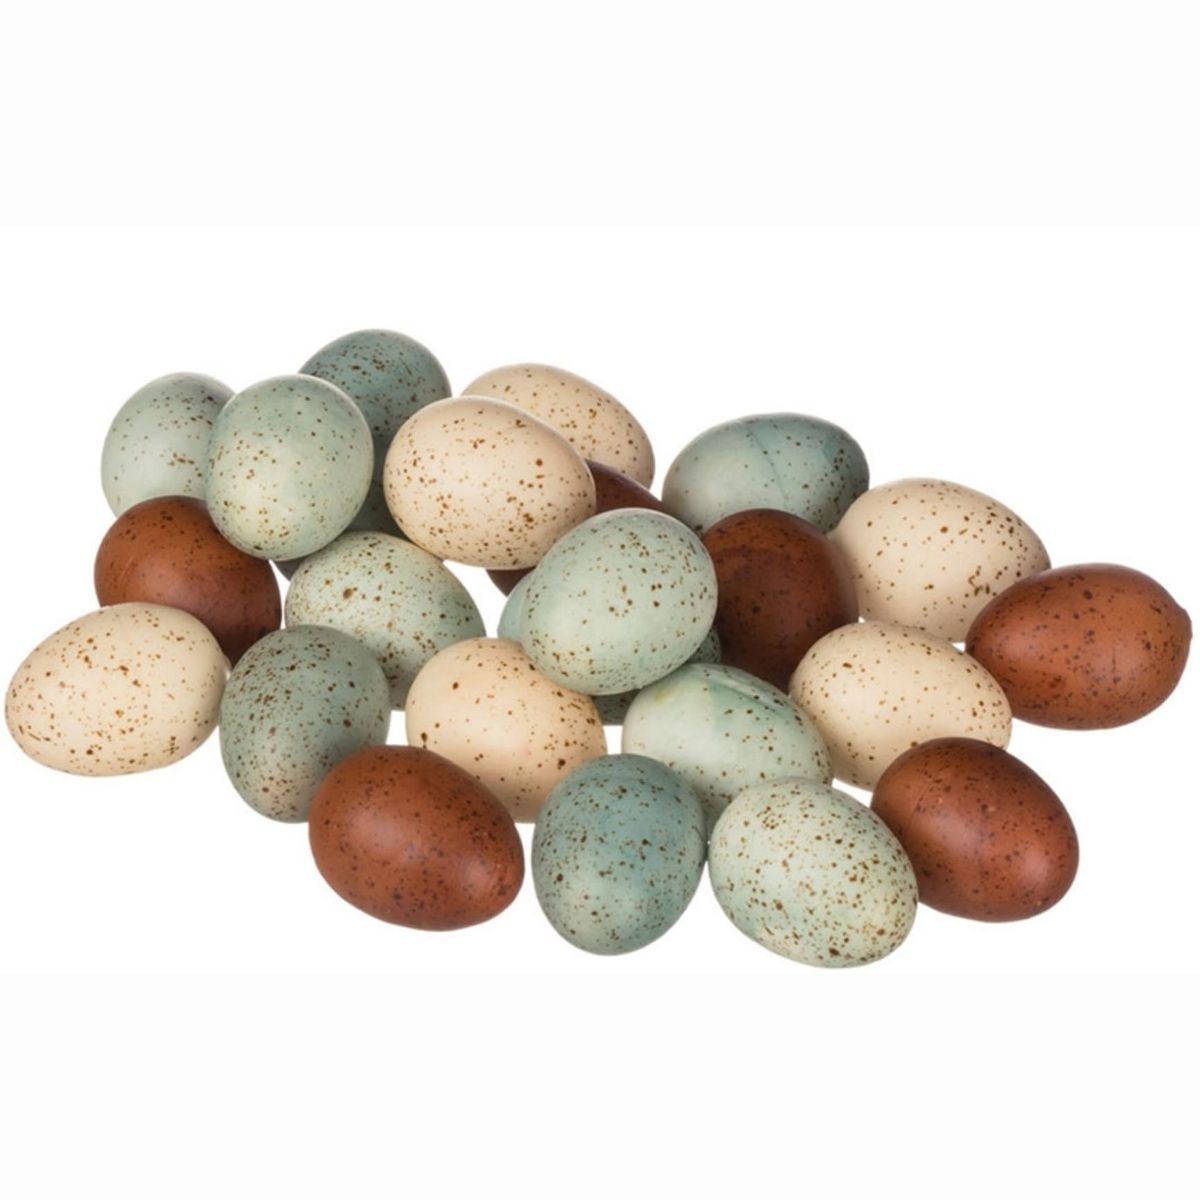 Sullivans Bag of 24 Colored Eggs Decorative Filler 2"H Blue, Brown & Off-White | Target